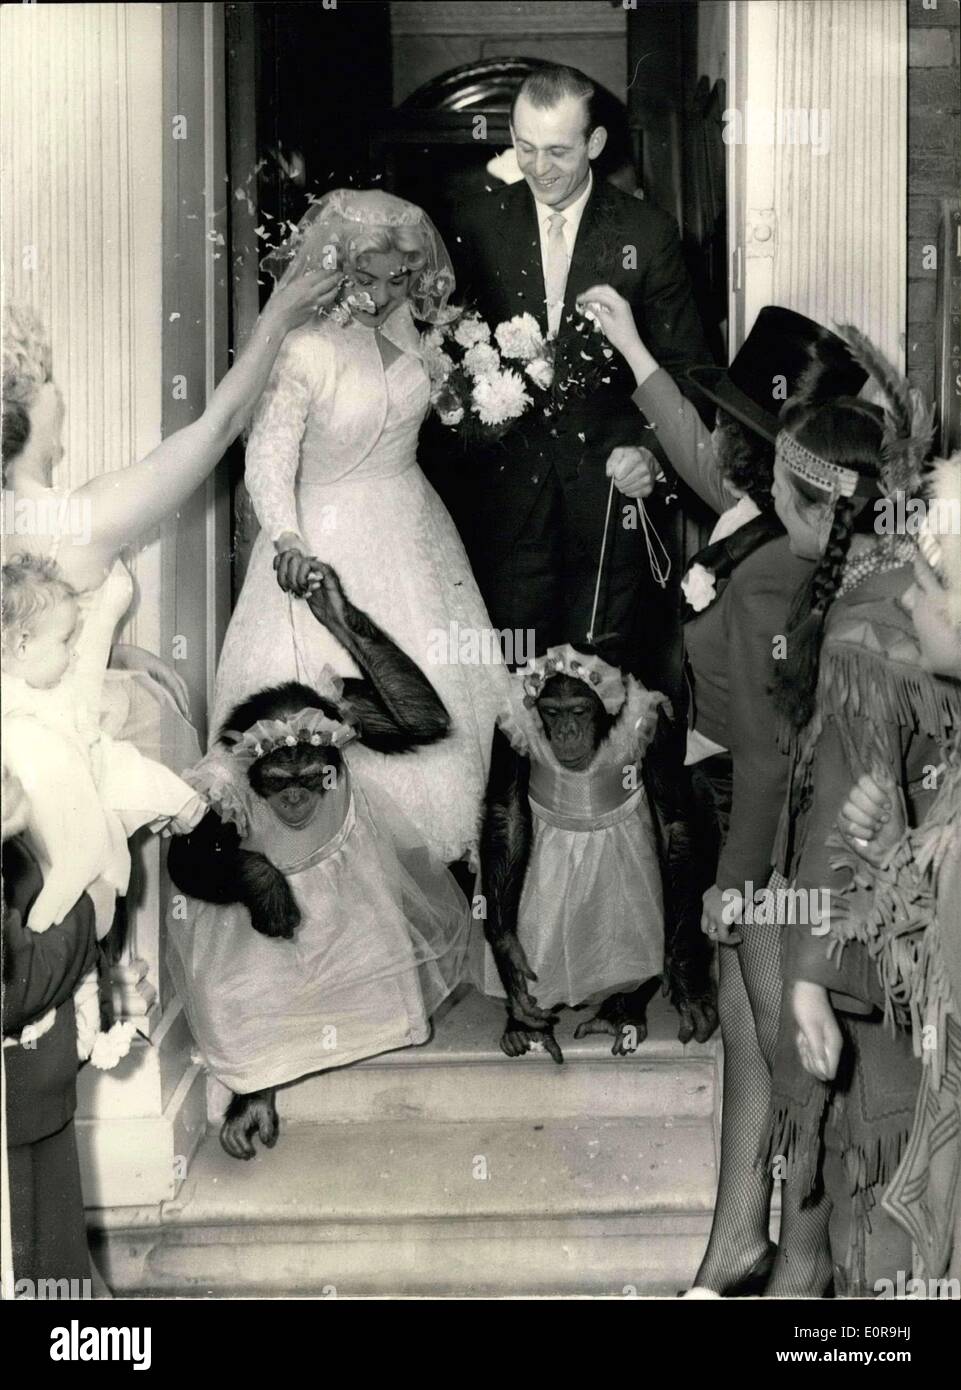 15 octobre 1958 - les chimpanzés comme demoiselles au Circus - Mariage : le mariage a lieu cet après-midi au bureau de Windsor s'inscrire Marion Clark, lion de mer bord Billy Smart Circus... Deux des chimpanzés du cirque a pris le rôle de ''Demoiselles''. Photo montre les mariés de quitter l'Office entouré par d'autres artistes de cirque - et les deux demoiselles d' ''inhabituelle Banque D'Images